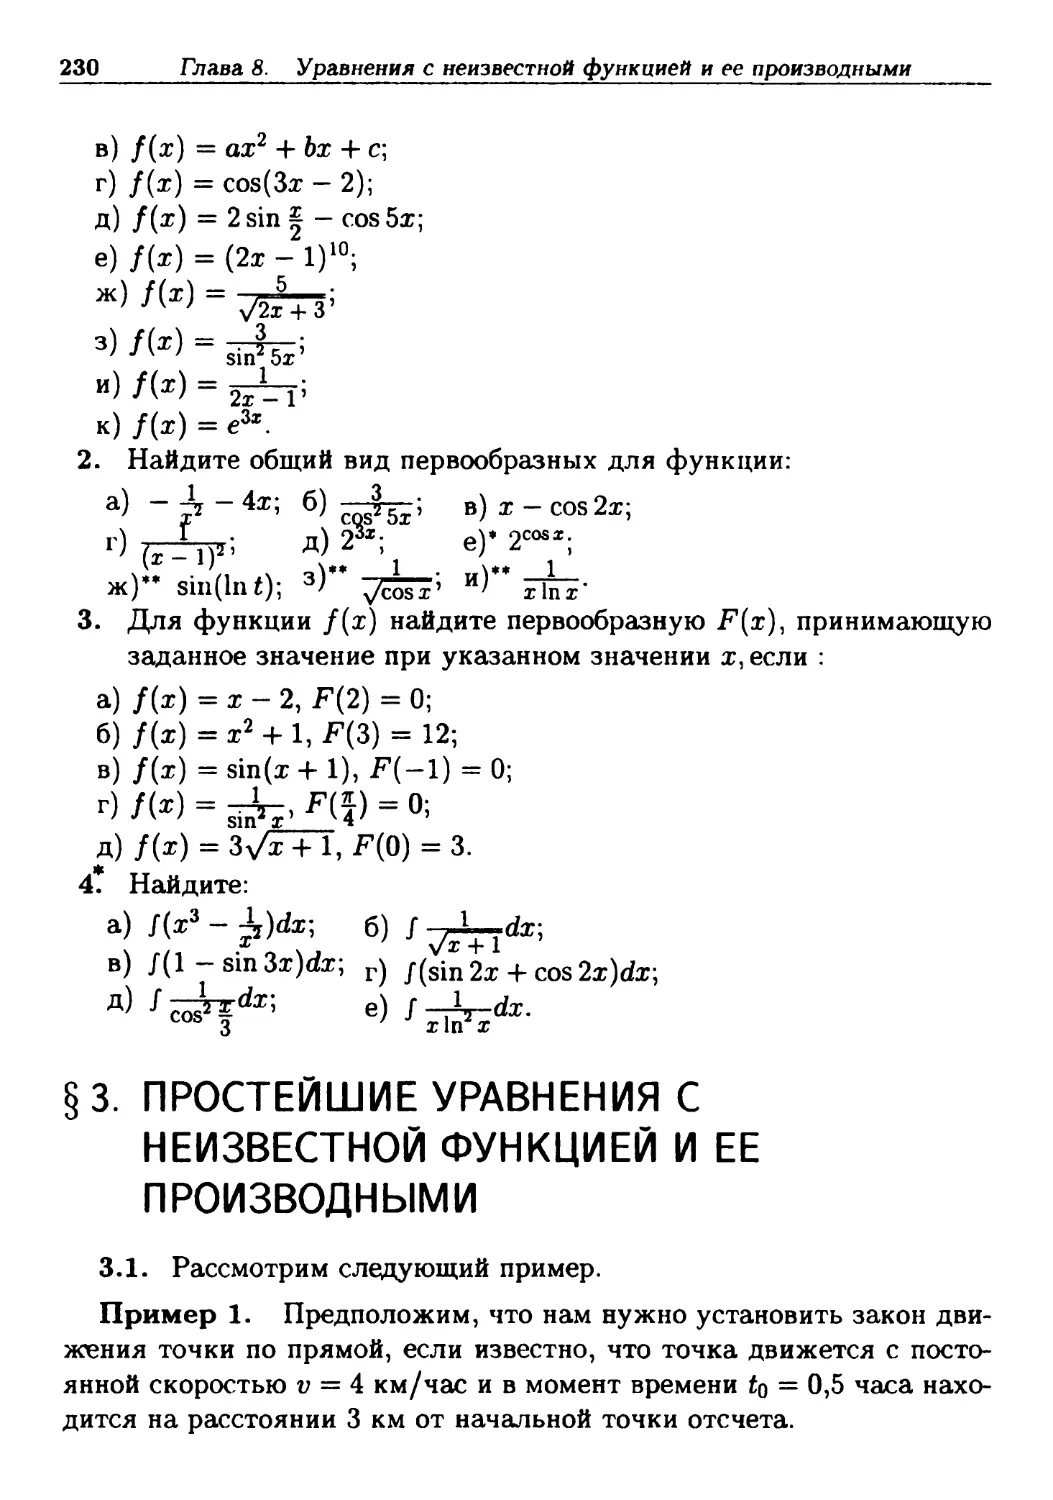 §3. Простейшие уравнения с неизвестной функцией и ее производными